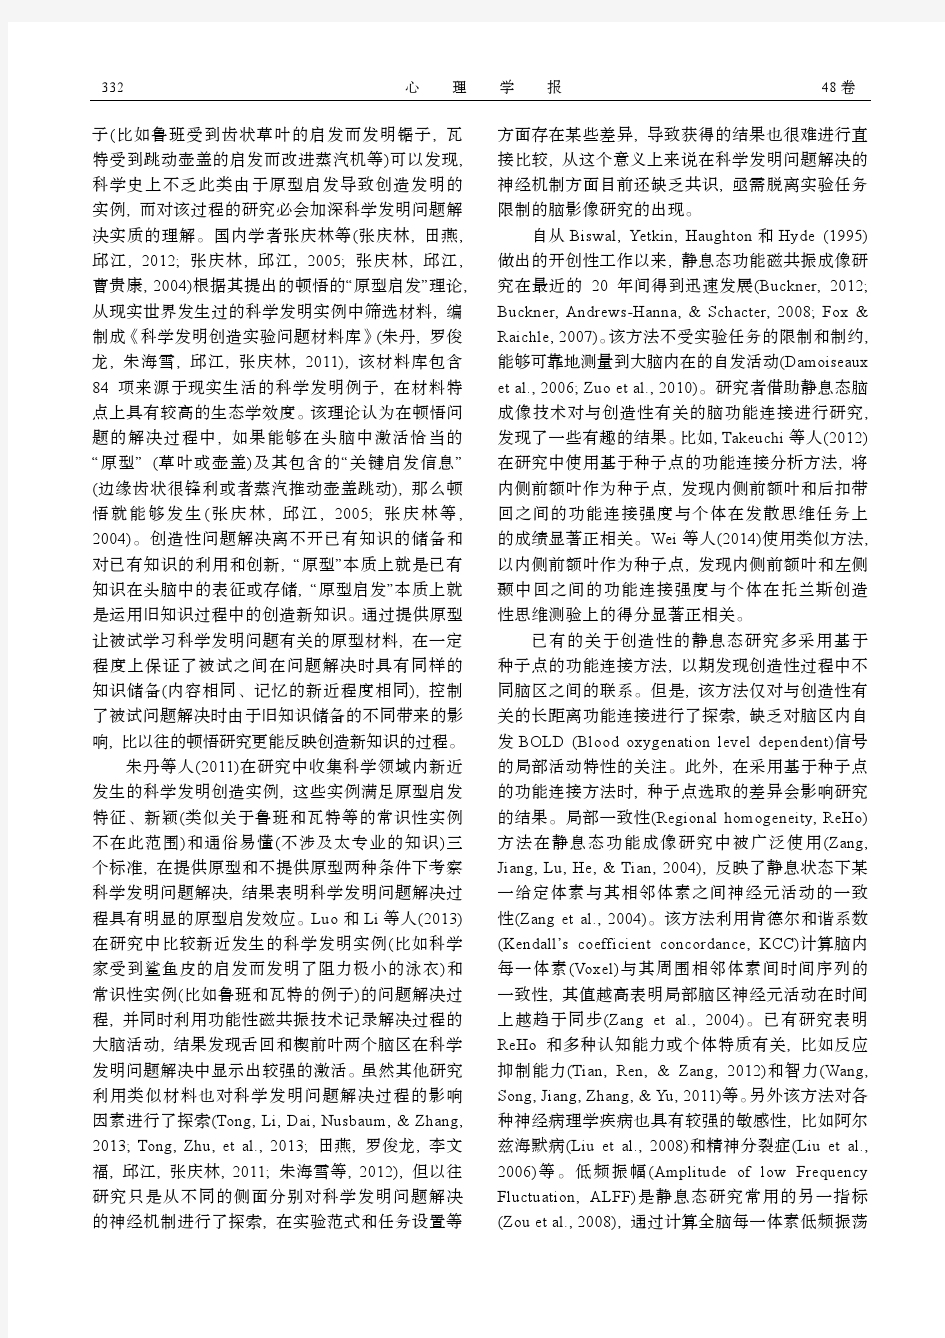 李文福, 童丹丹, 邱江, 张庆林. (2016). 科学发明问题解决的脑机制再探